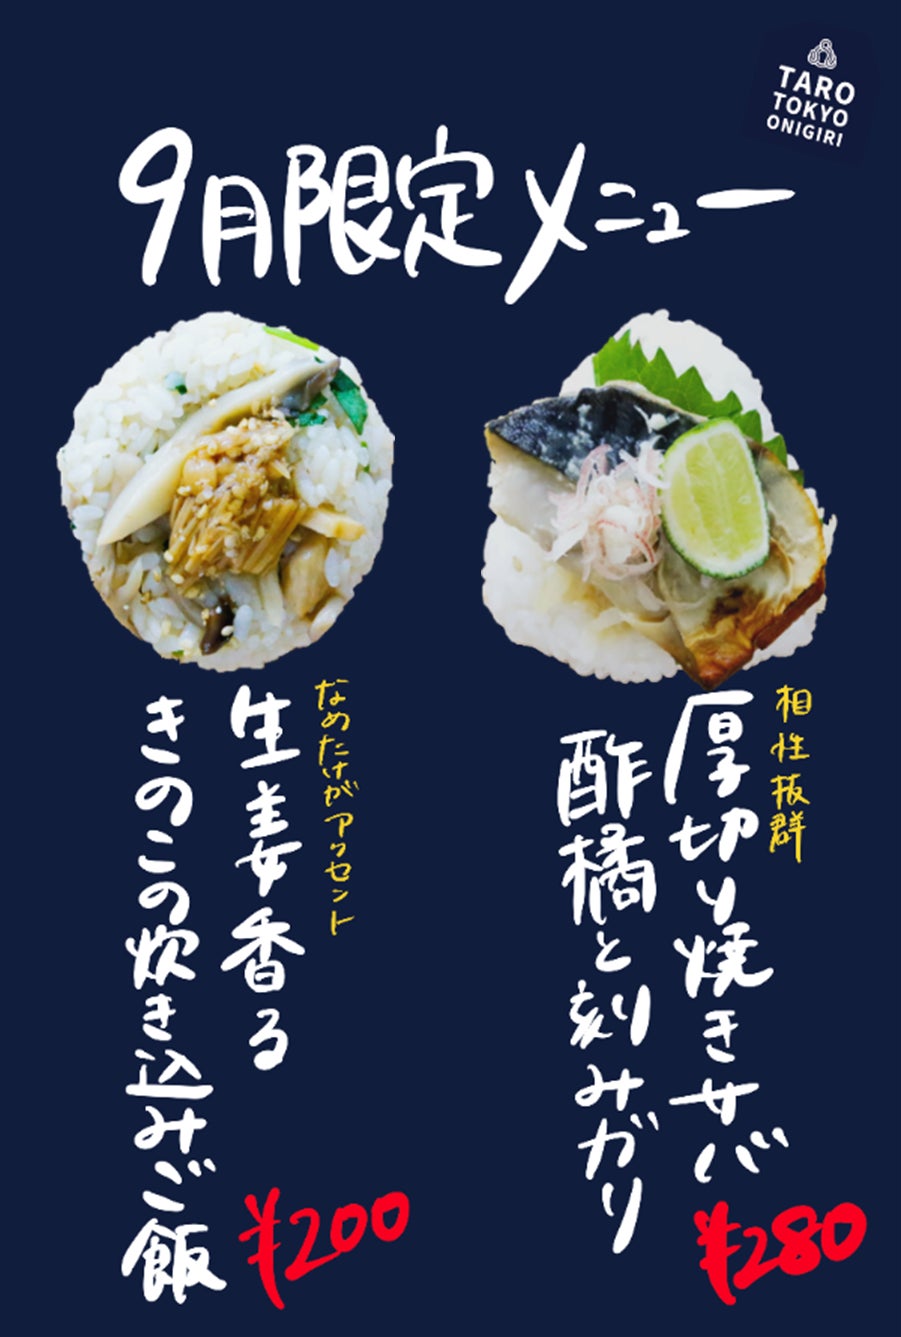 おにぎり専門店TARO TOKYO ONIGIRIより秋の旬食材を使った新メニューが期間限定で登場